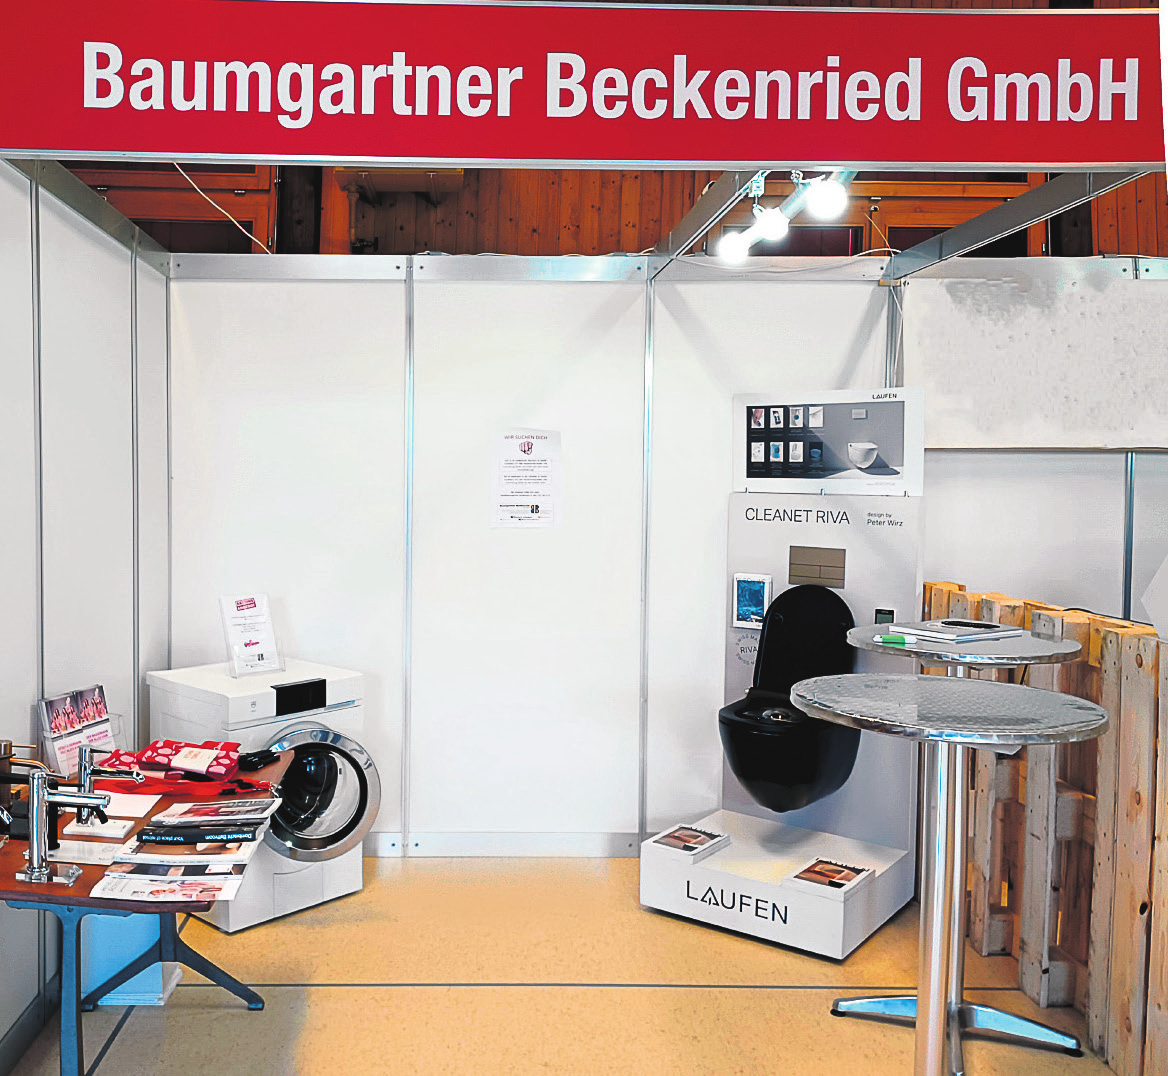 Gewerbeausstellung: Stand Baumgartner Beckenried GmbH.